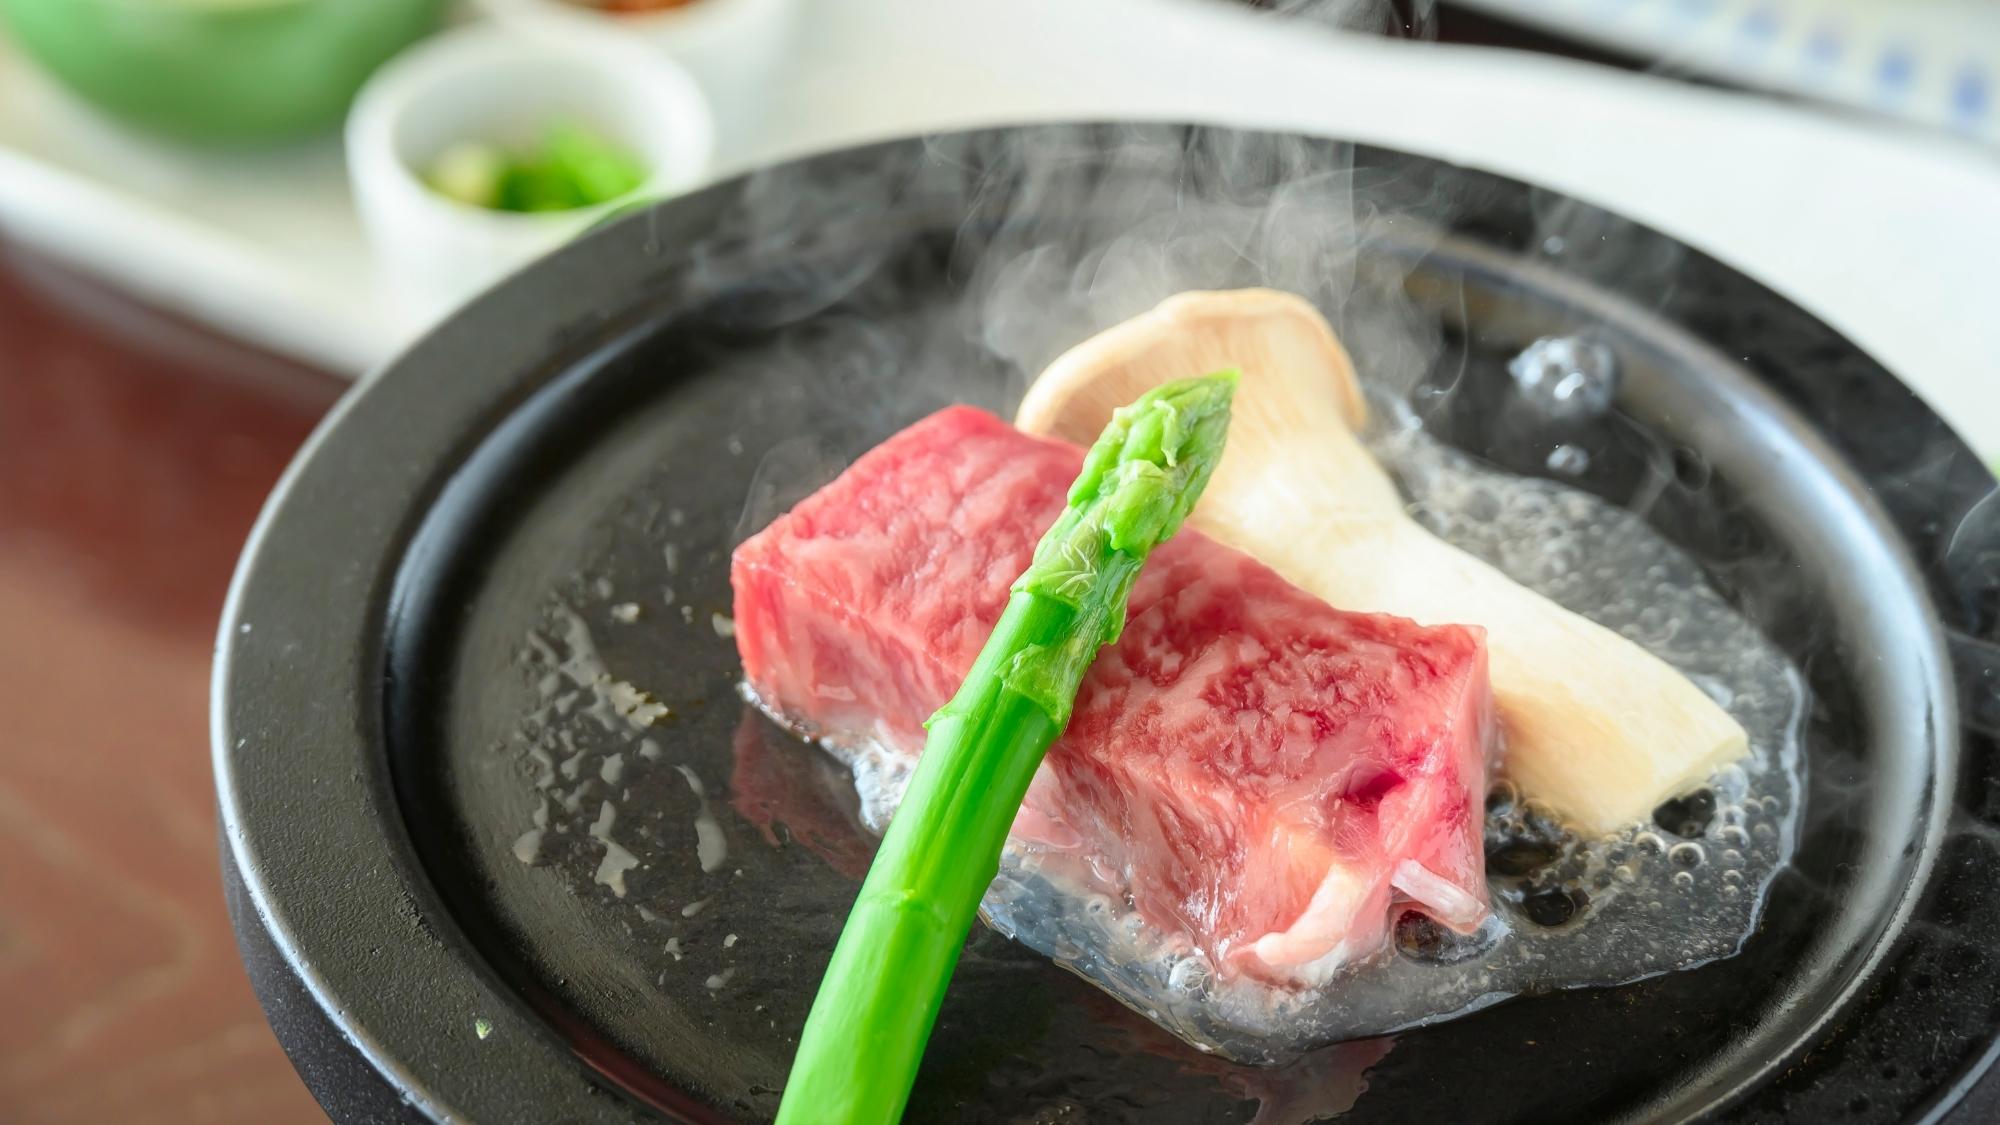 鳥取が誇る絶品牛「鳥取和牛」を使用した、とろけるような味わいのステーキを召し上がれ。